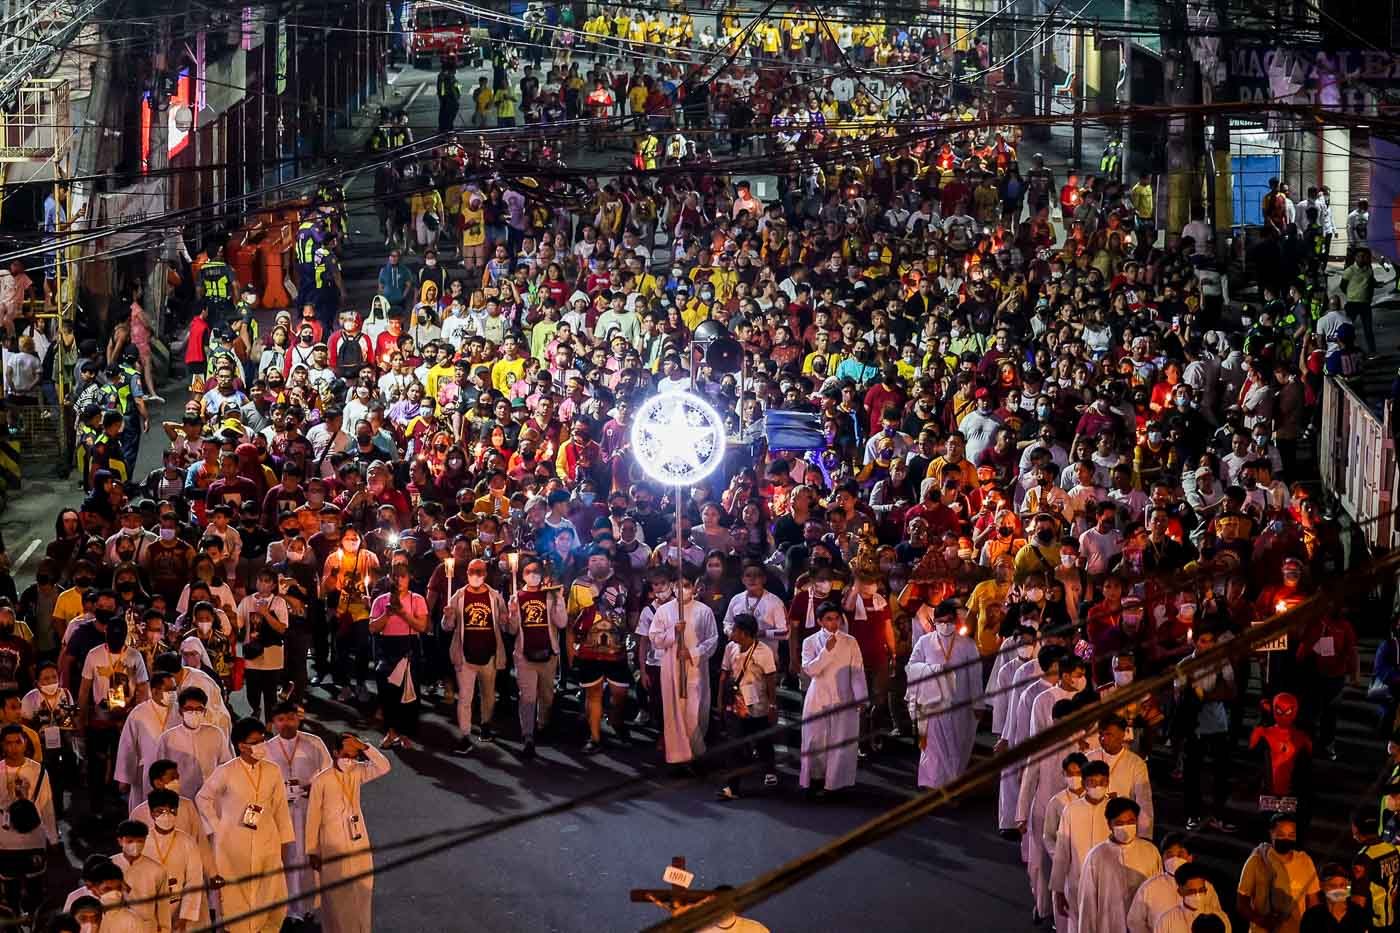 IN PHOTOS: Thousands join ‘walk of faith’ on eve of Nazarene feast